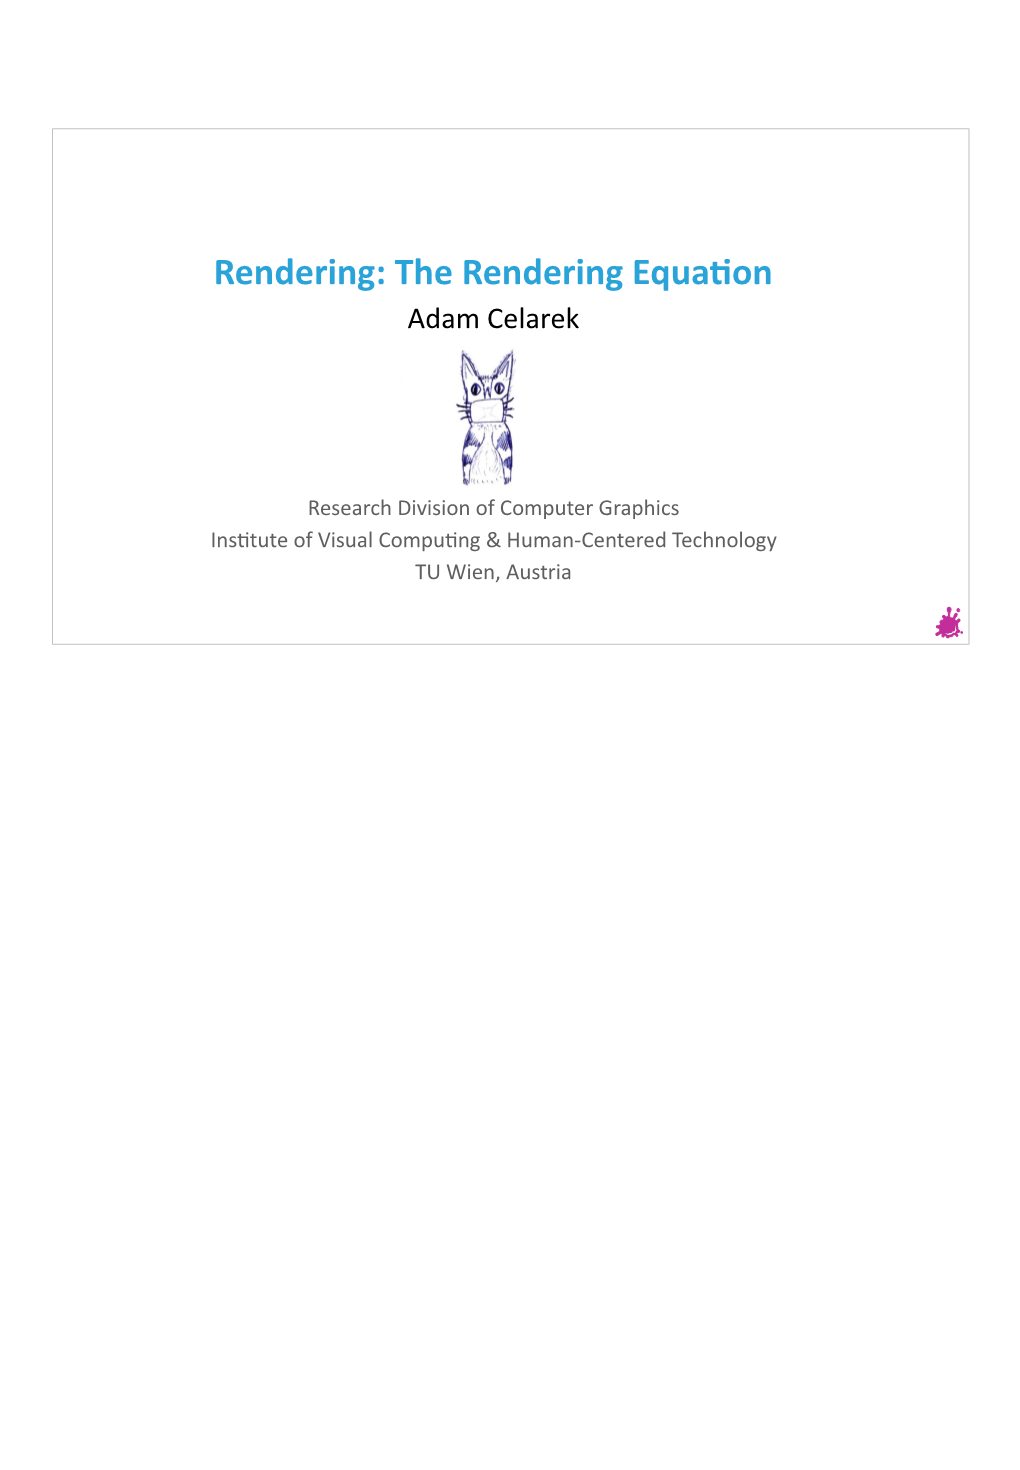 The Rendering Equation Adam Celarek